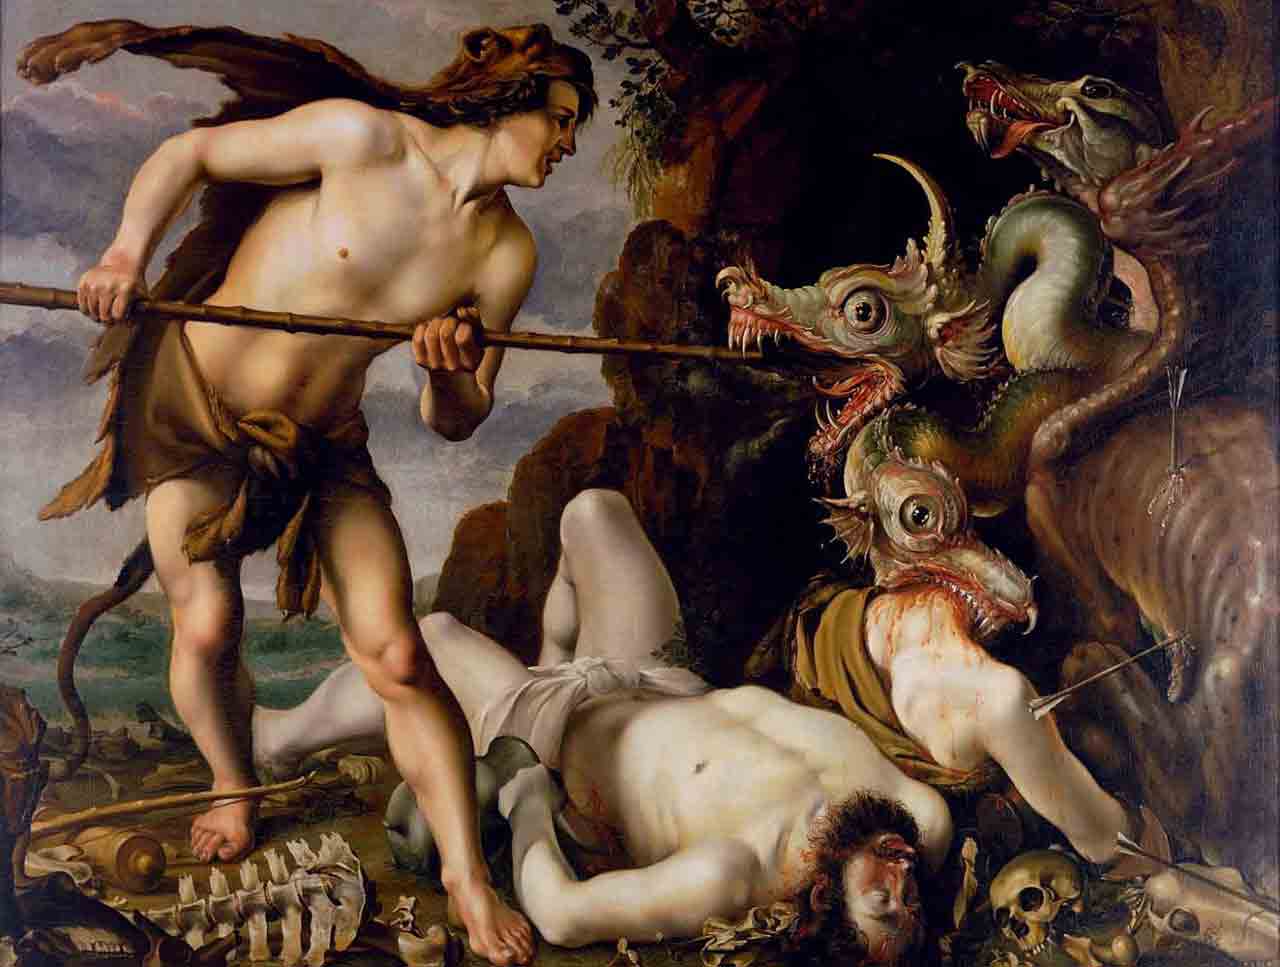 Qadmous - Legende - Gemälde: Hendrick Goltzius - 1558 bis 1617 †